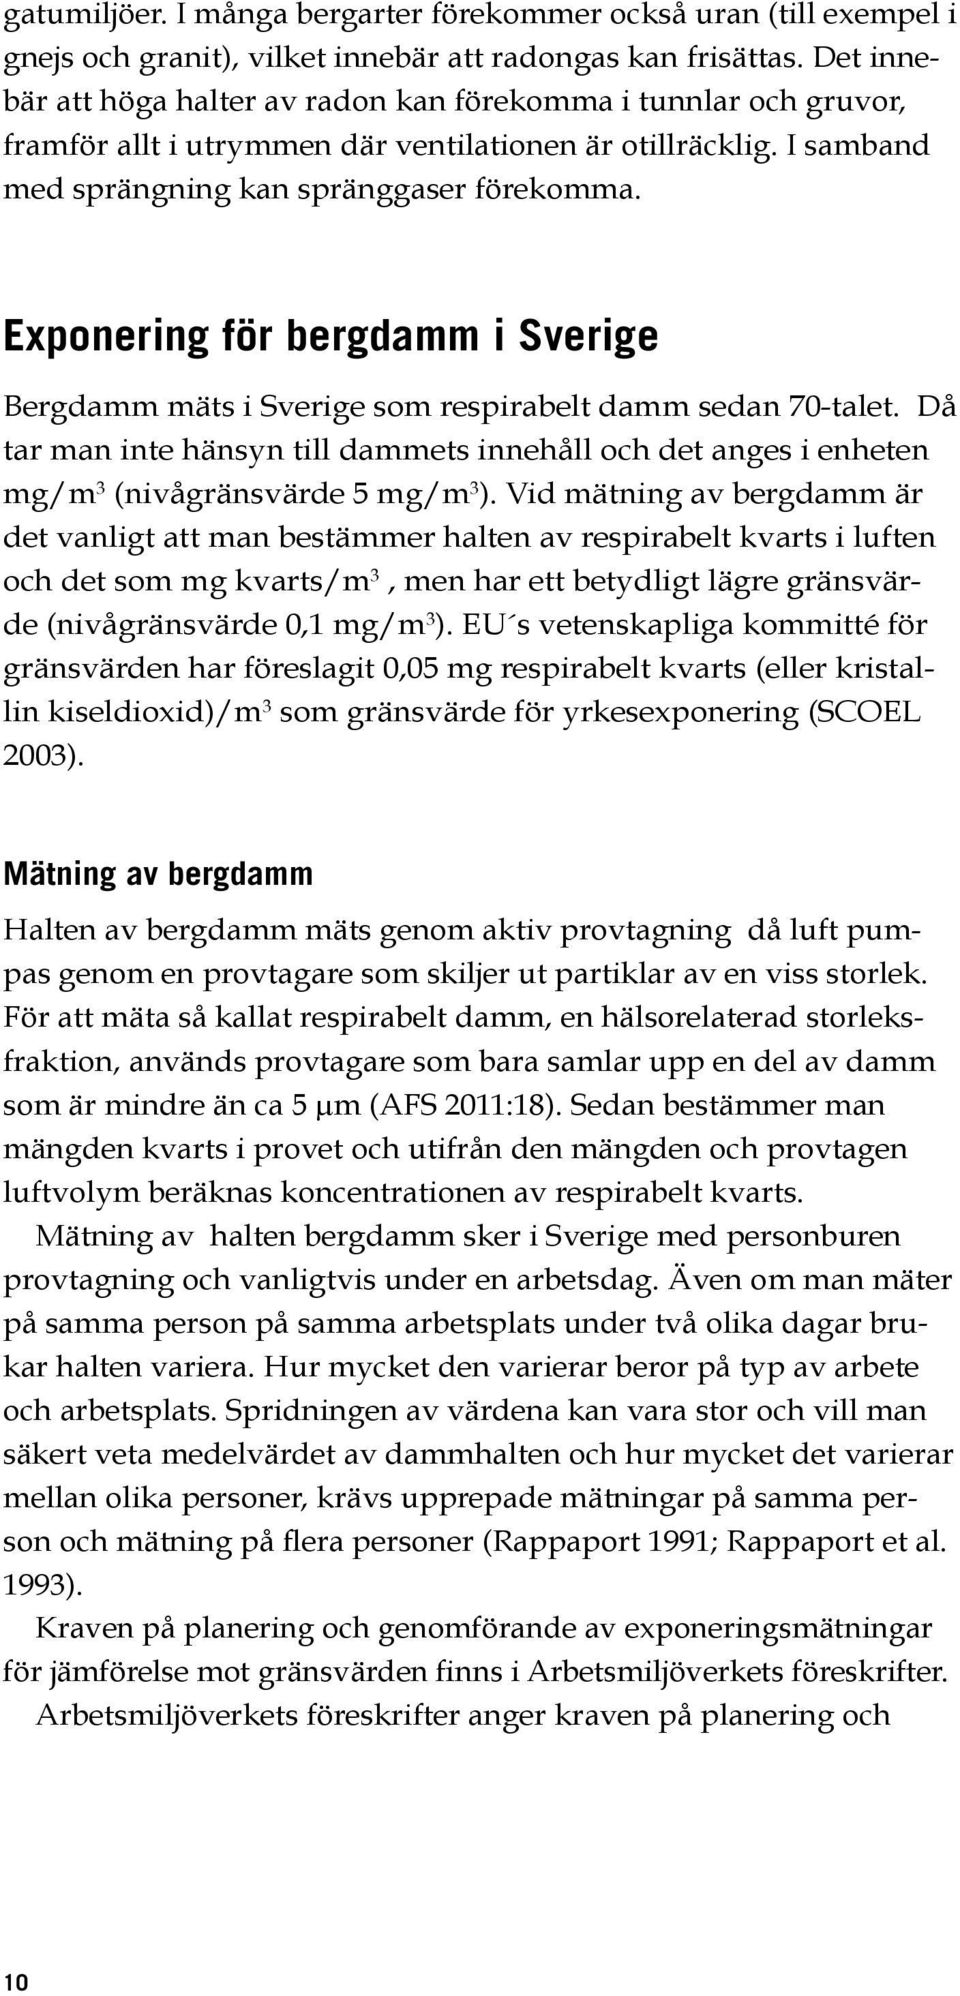 Exponering för bergdamm i Sverige Bergdamm mäts i Sverige som respirabelt damm sedan 70-talet. Då tar man inte hänsyn till dammets innehåll och det anges i enheten mg/m 3 (nivågränsvärde 5 mg/m 3 ).